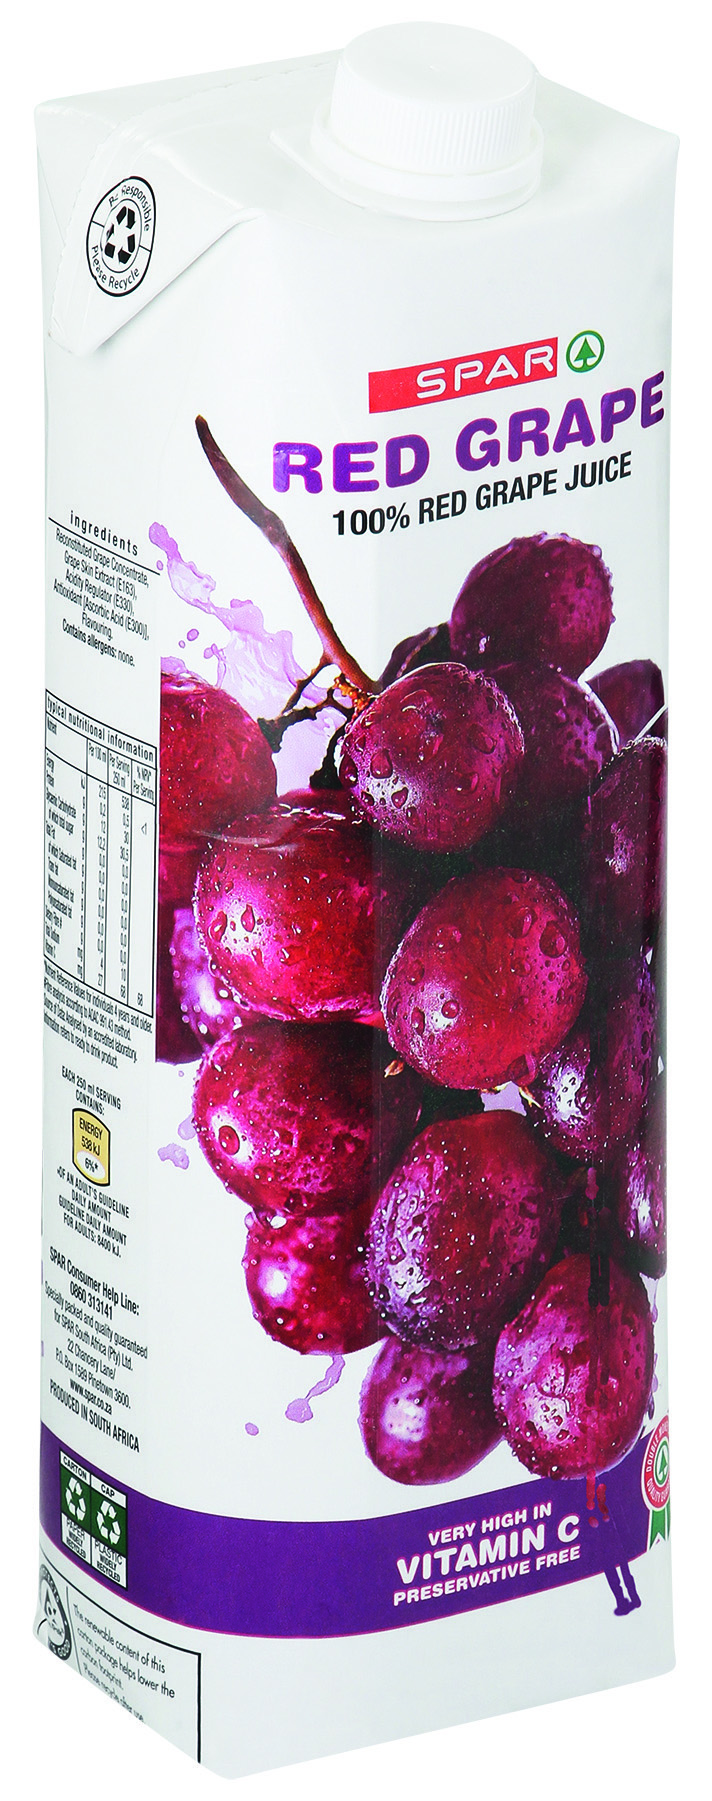 100% fruit juice blend - red grape juice